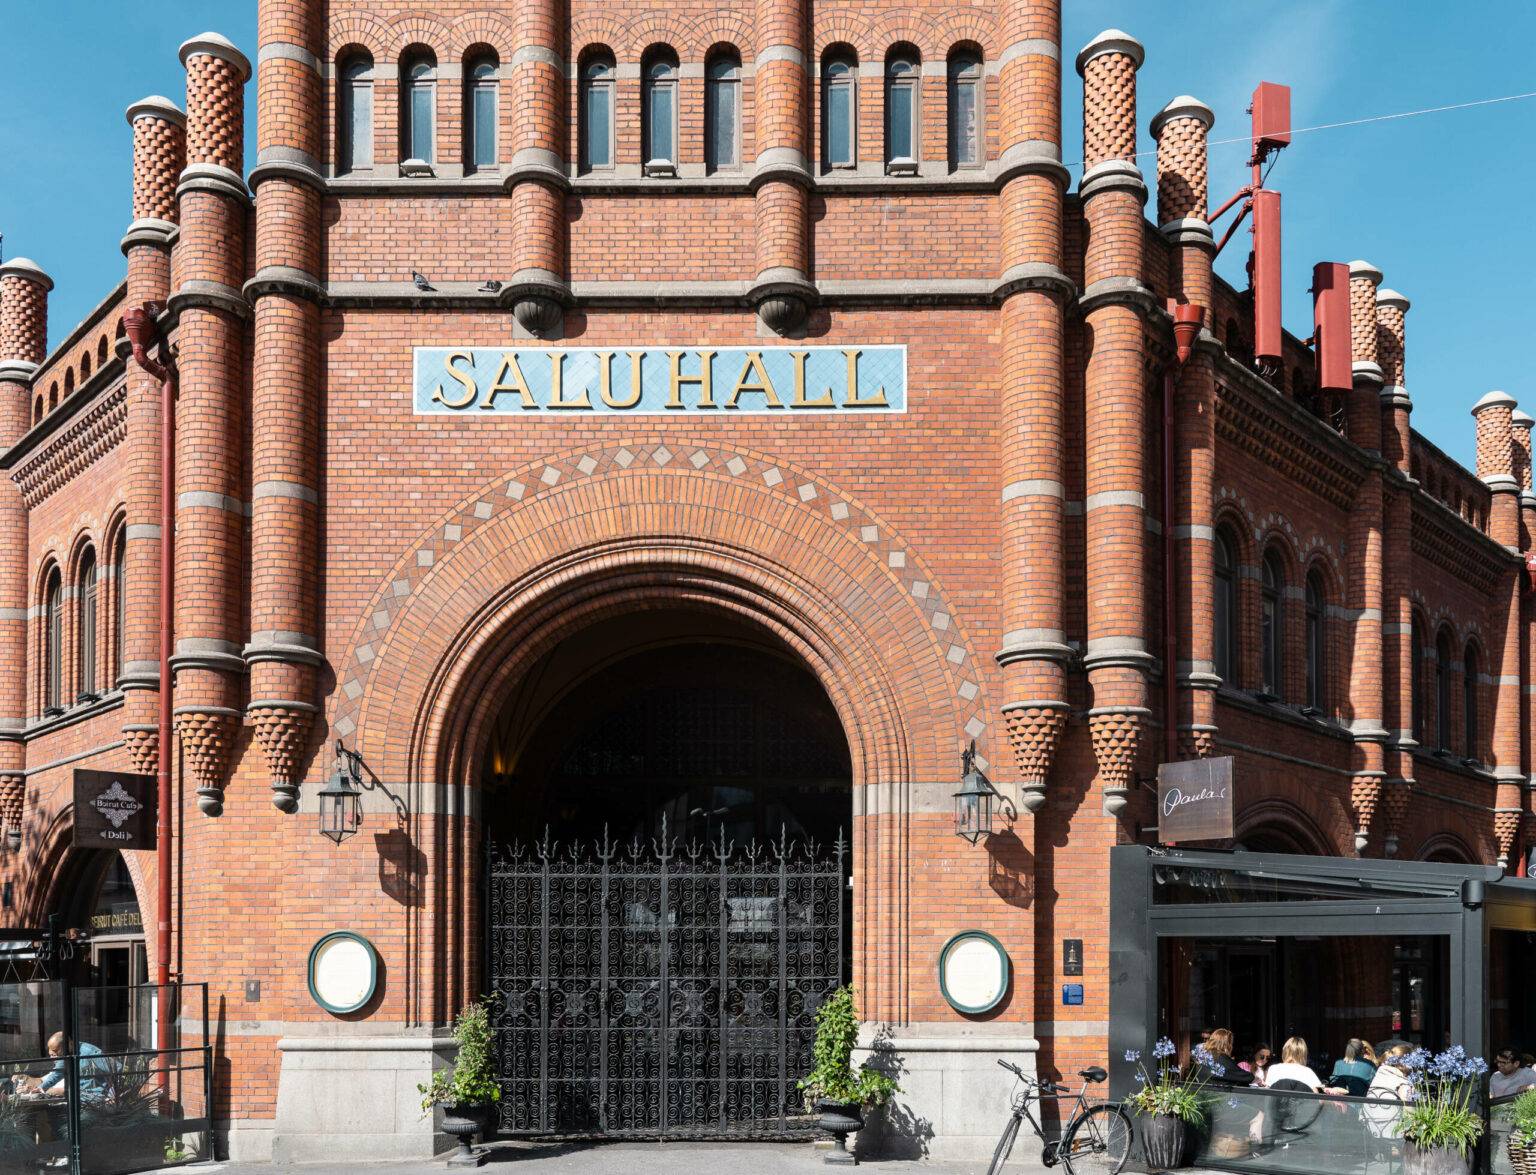 Die Östermalms Saluhall wurde 1888 nach dem Vorbild südeuropäischer Markthallen erbaut. Nach einer orginalgetreuen Sanierung erstrahlt sie seit 2020 in neuem Glanz.